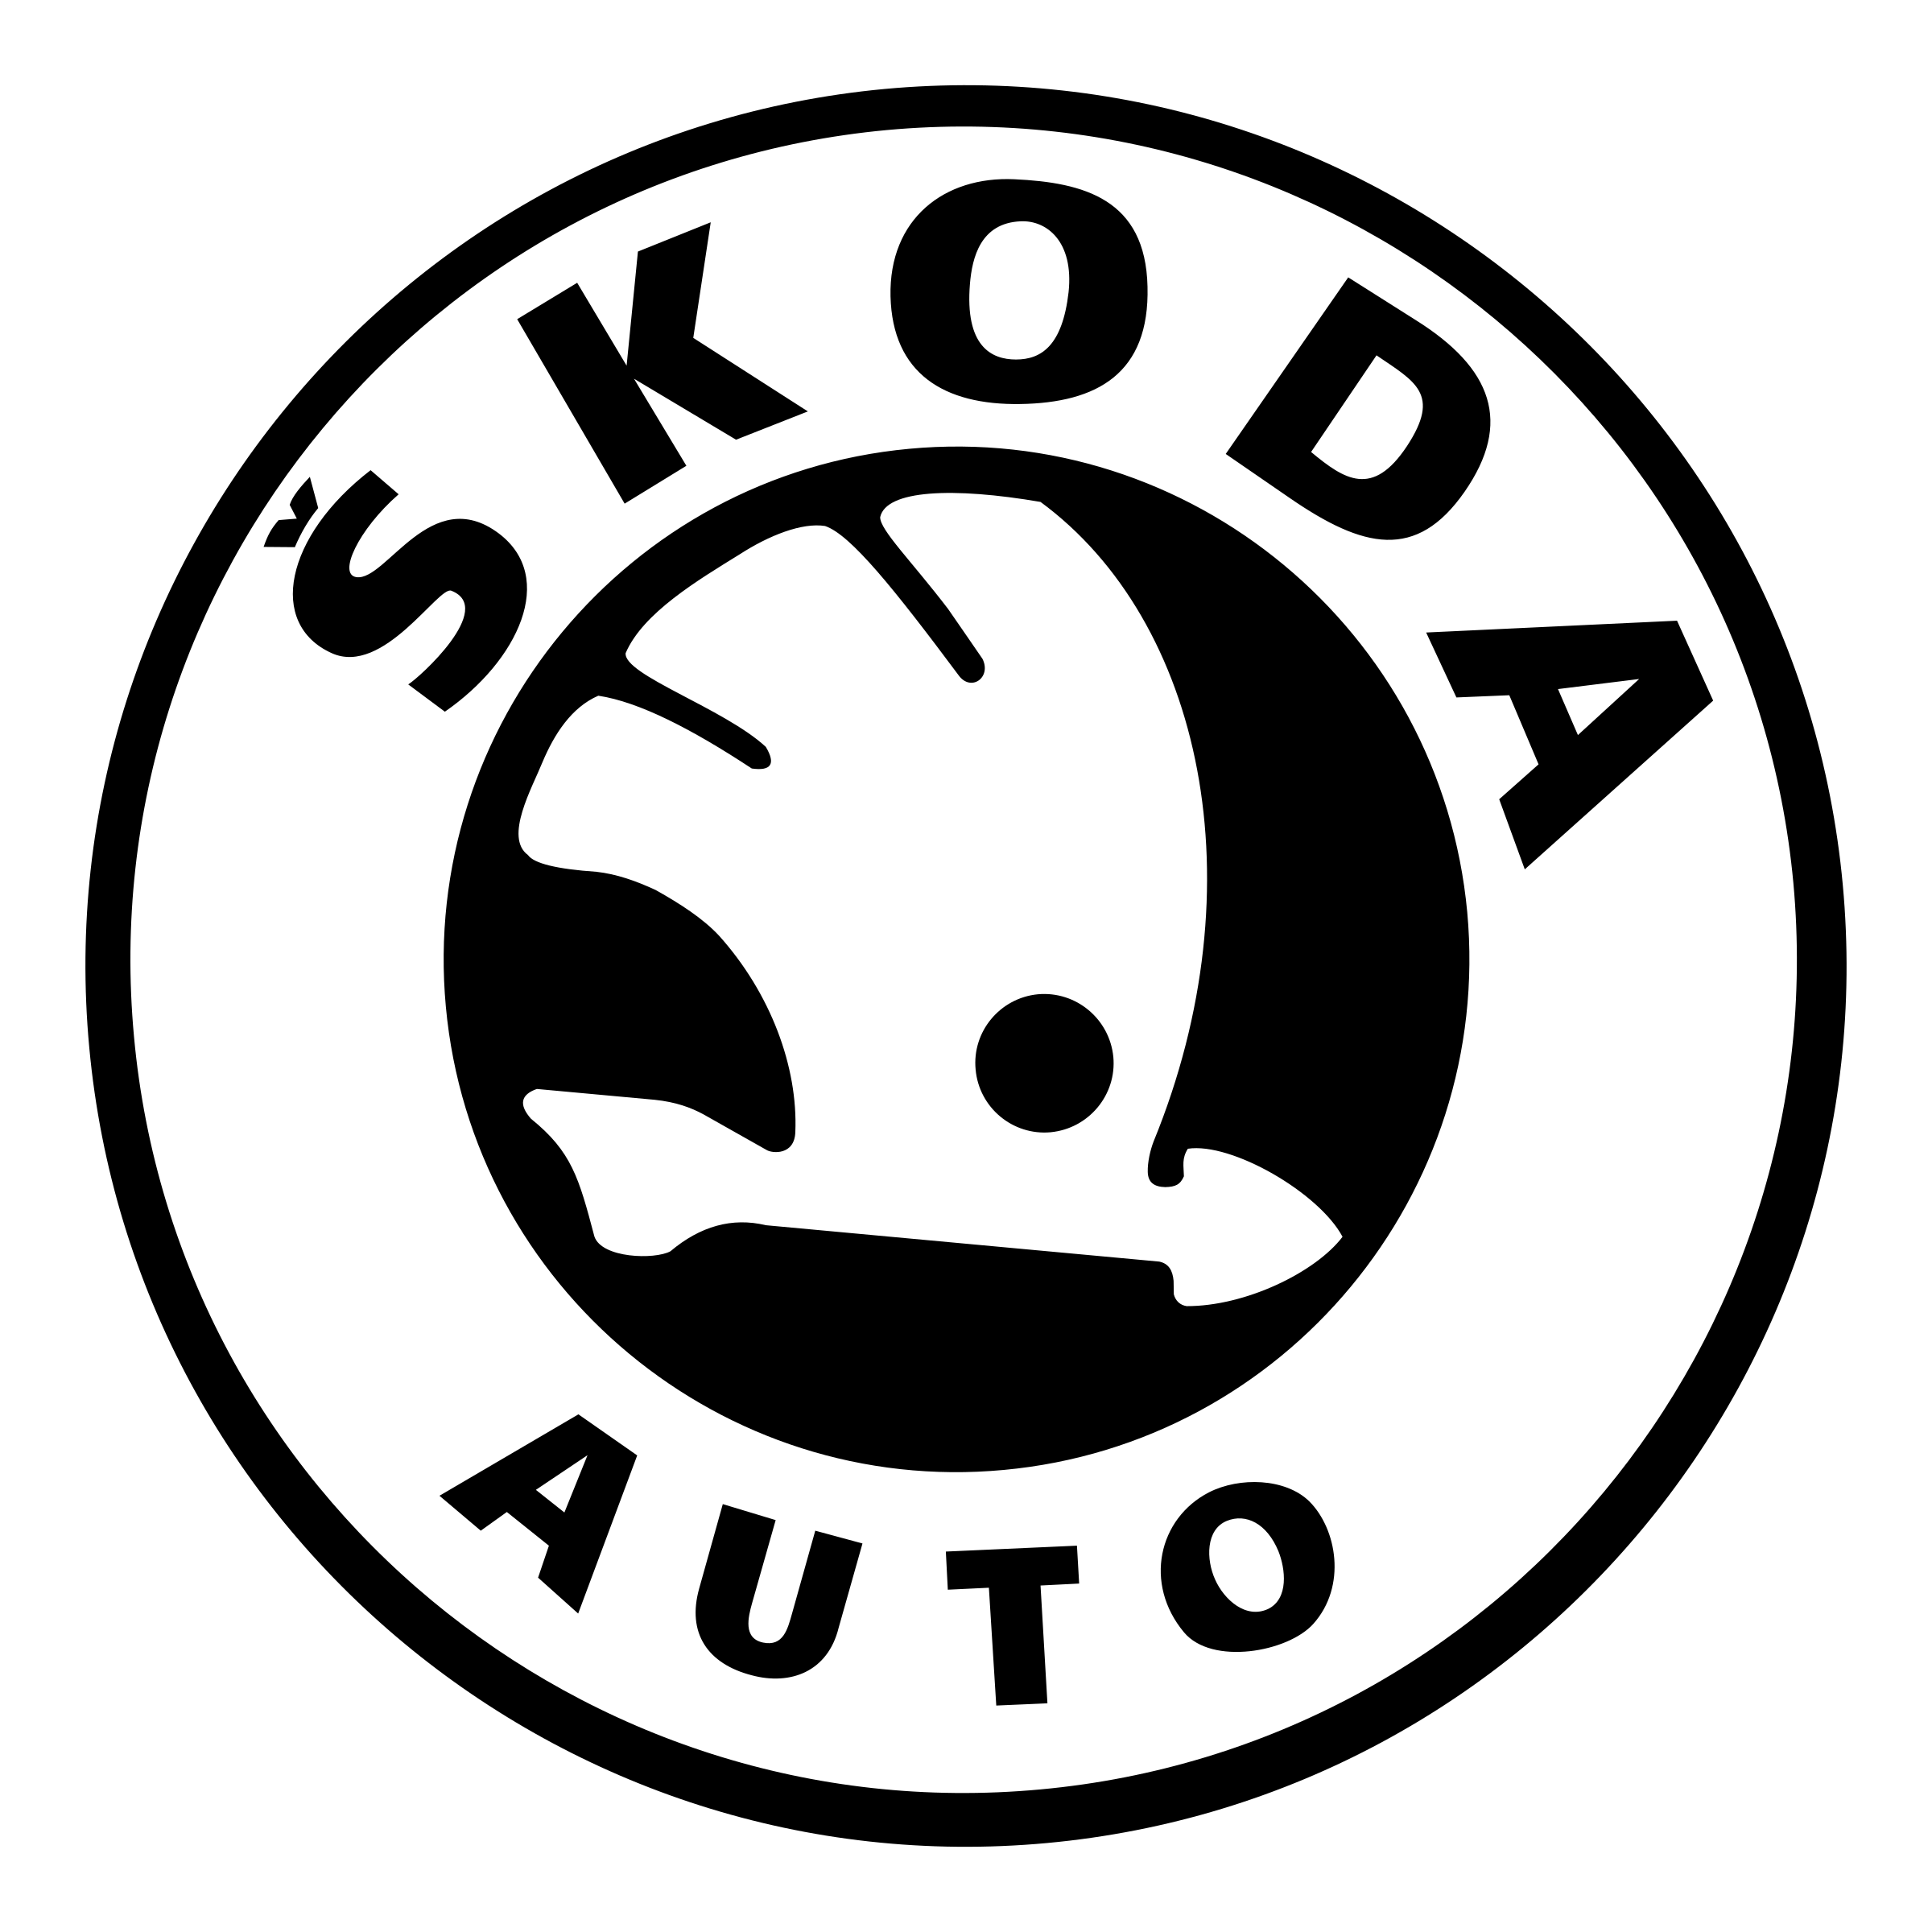 Skoda Logo 2018 , Png Downloa